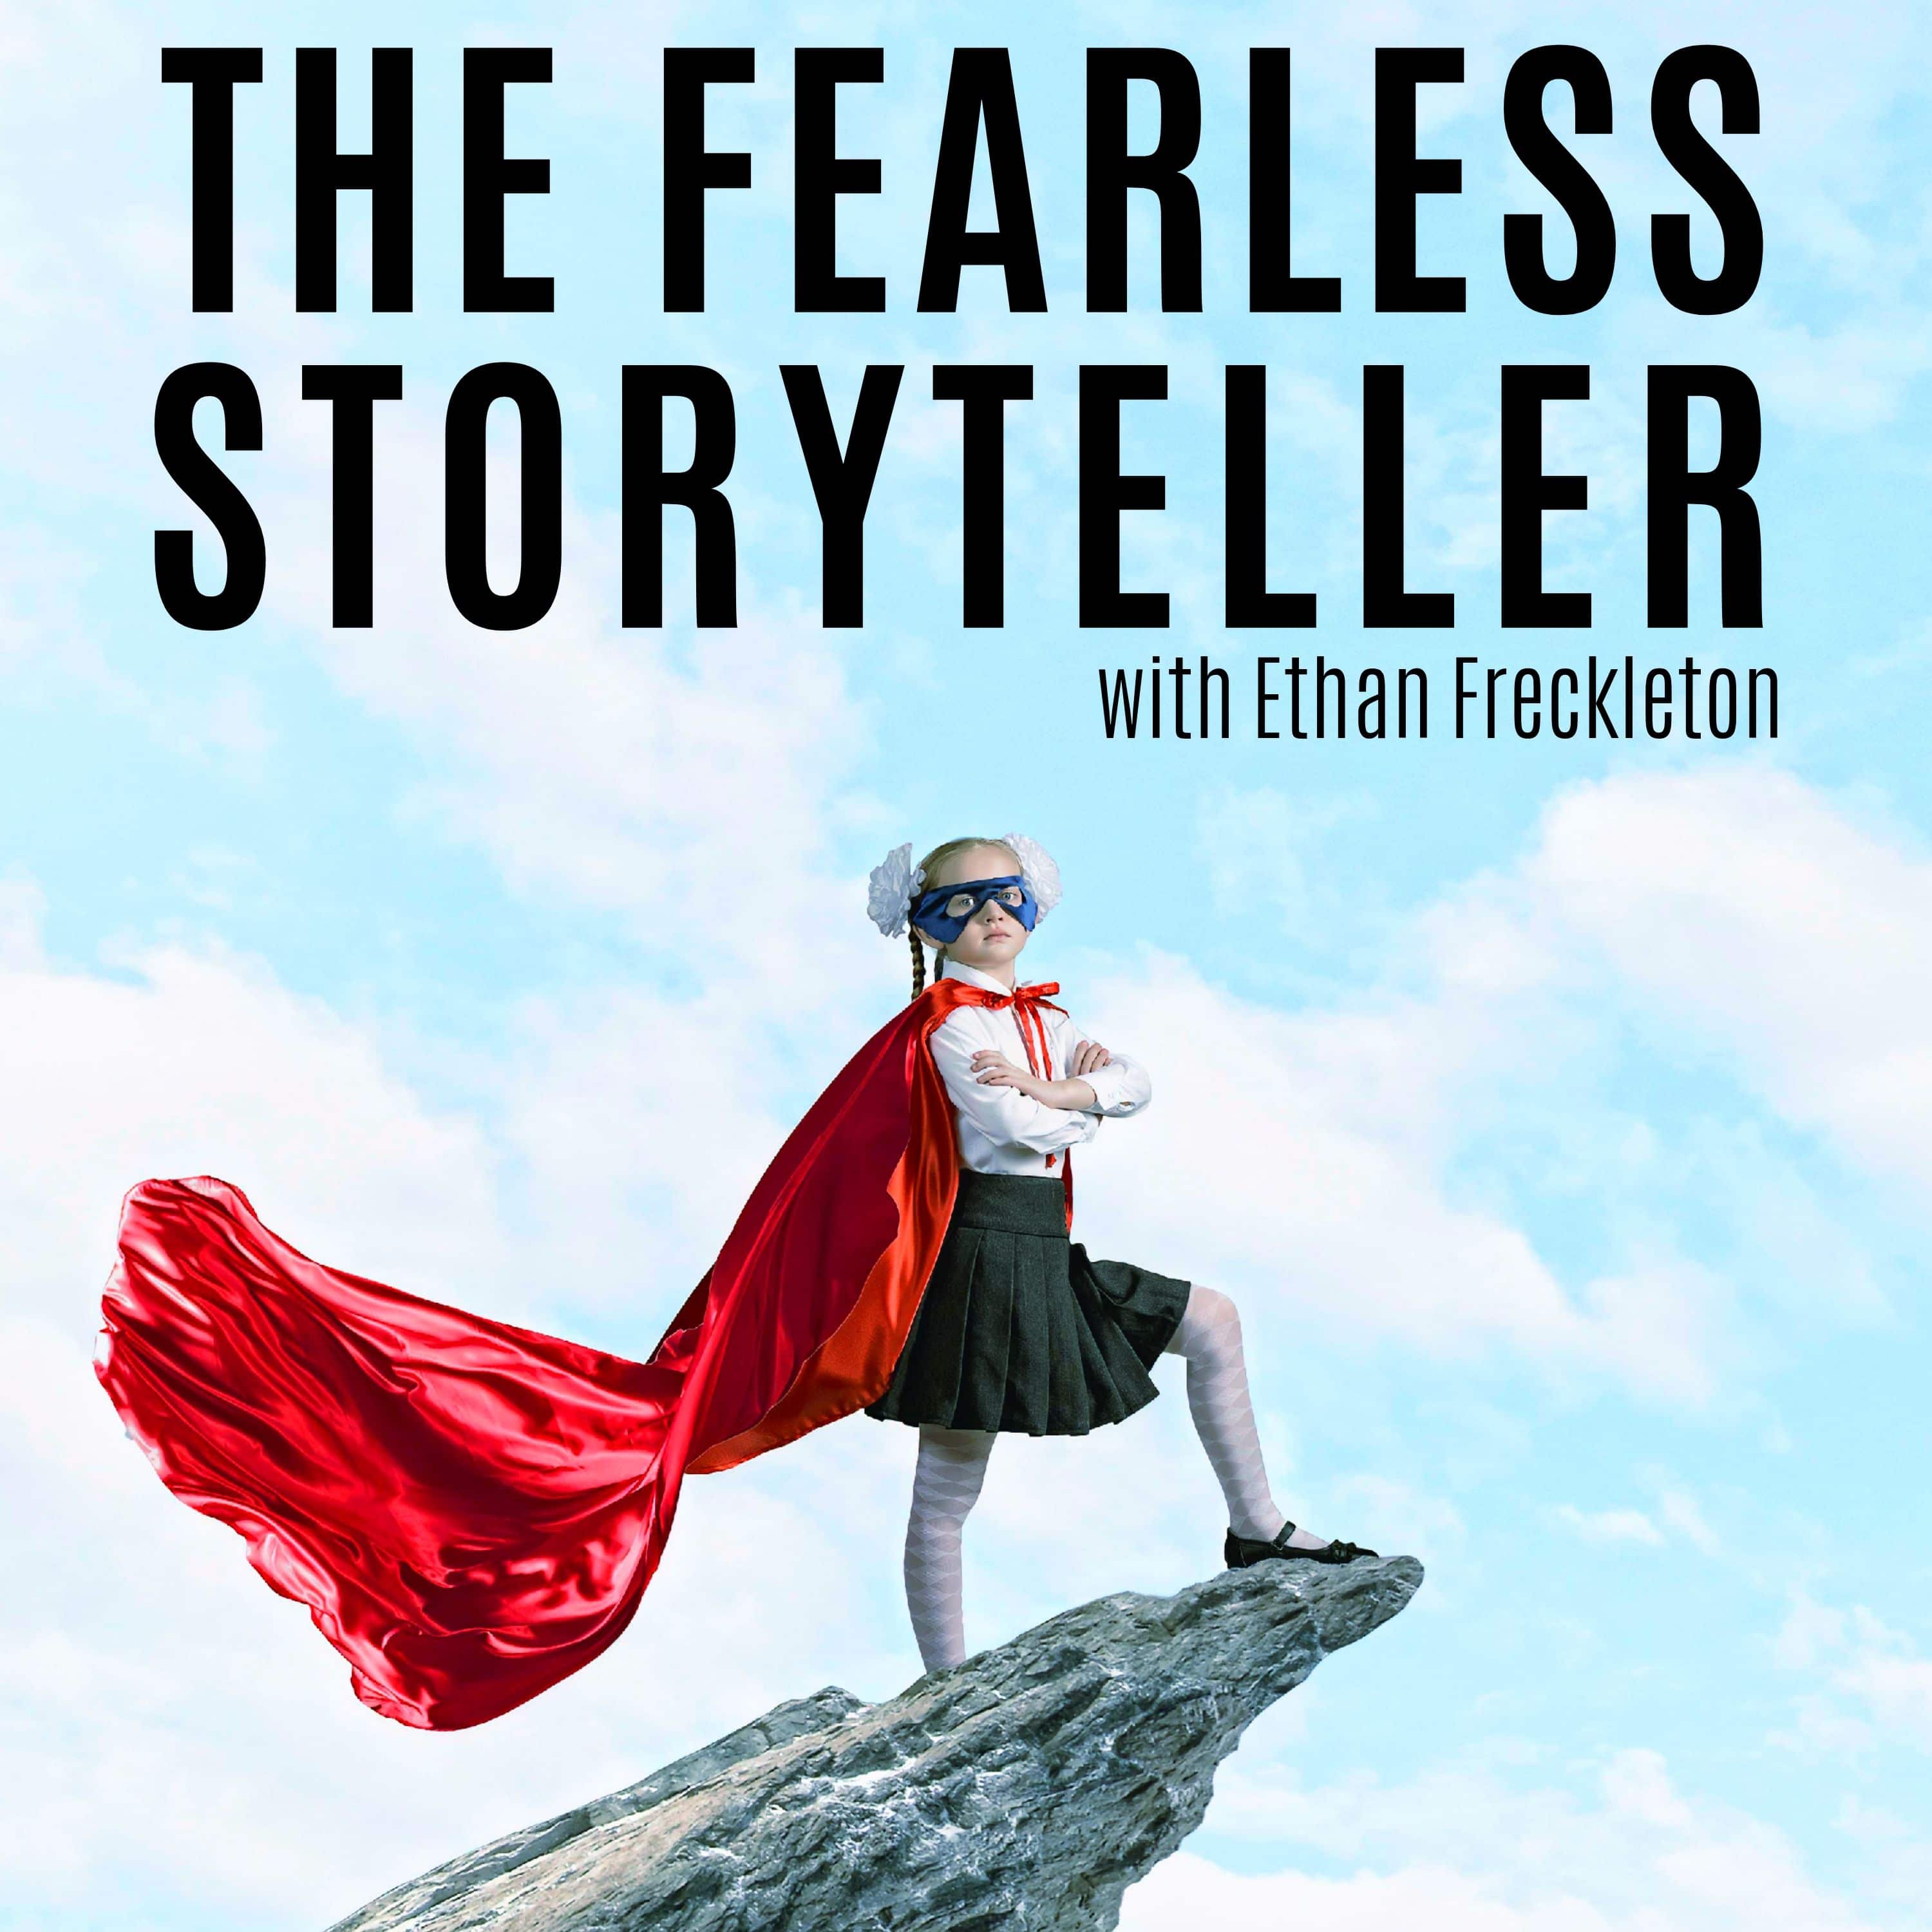 The Fearless Storyteller